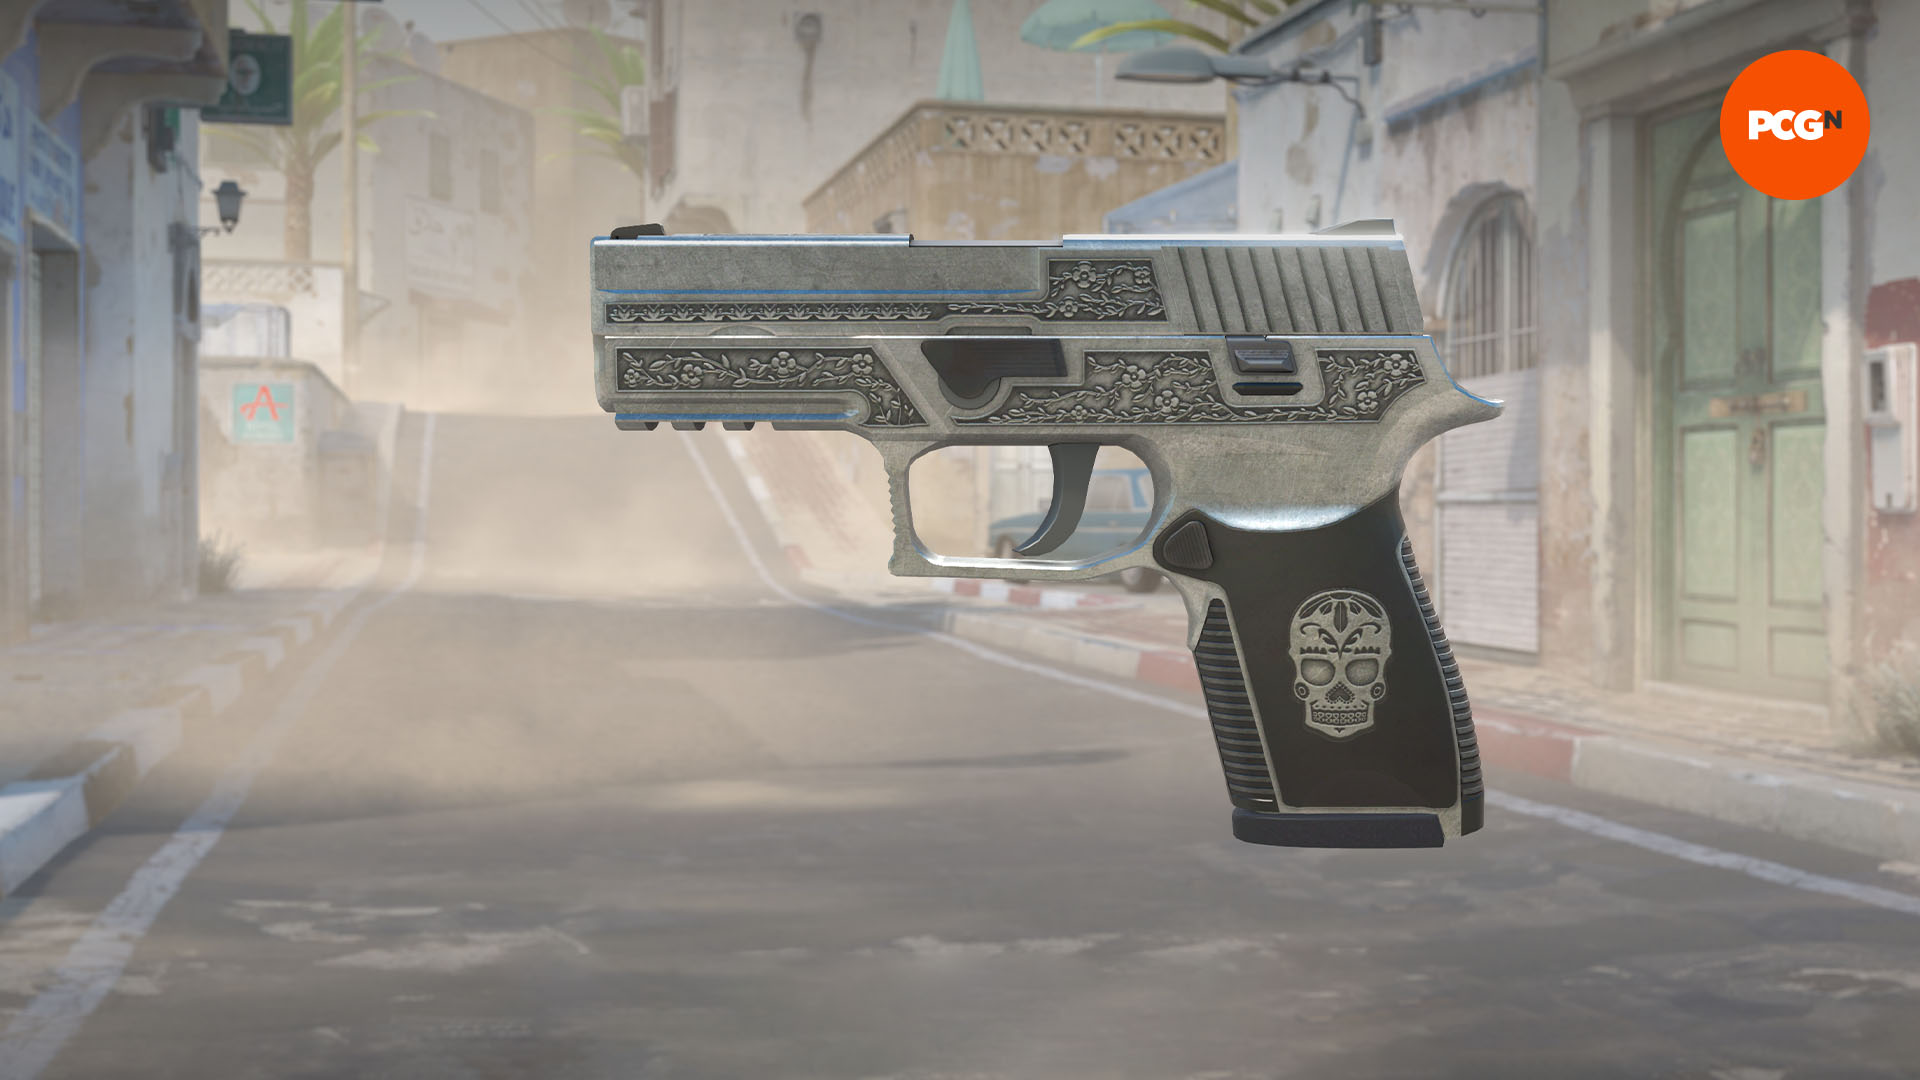 Counter-Strike 2  Rock Paper Shotgun